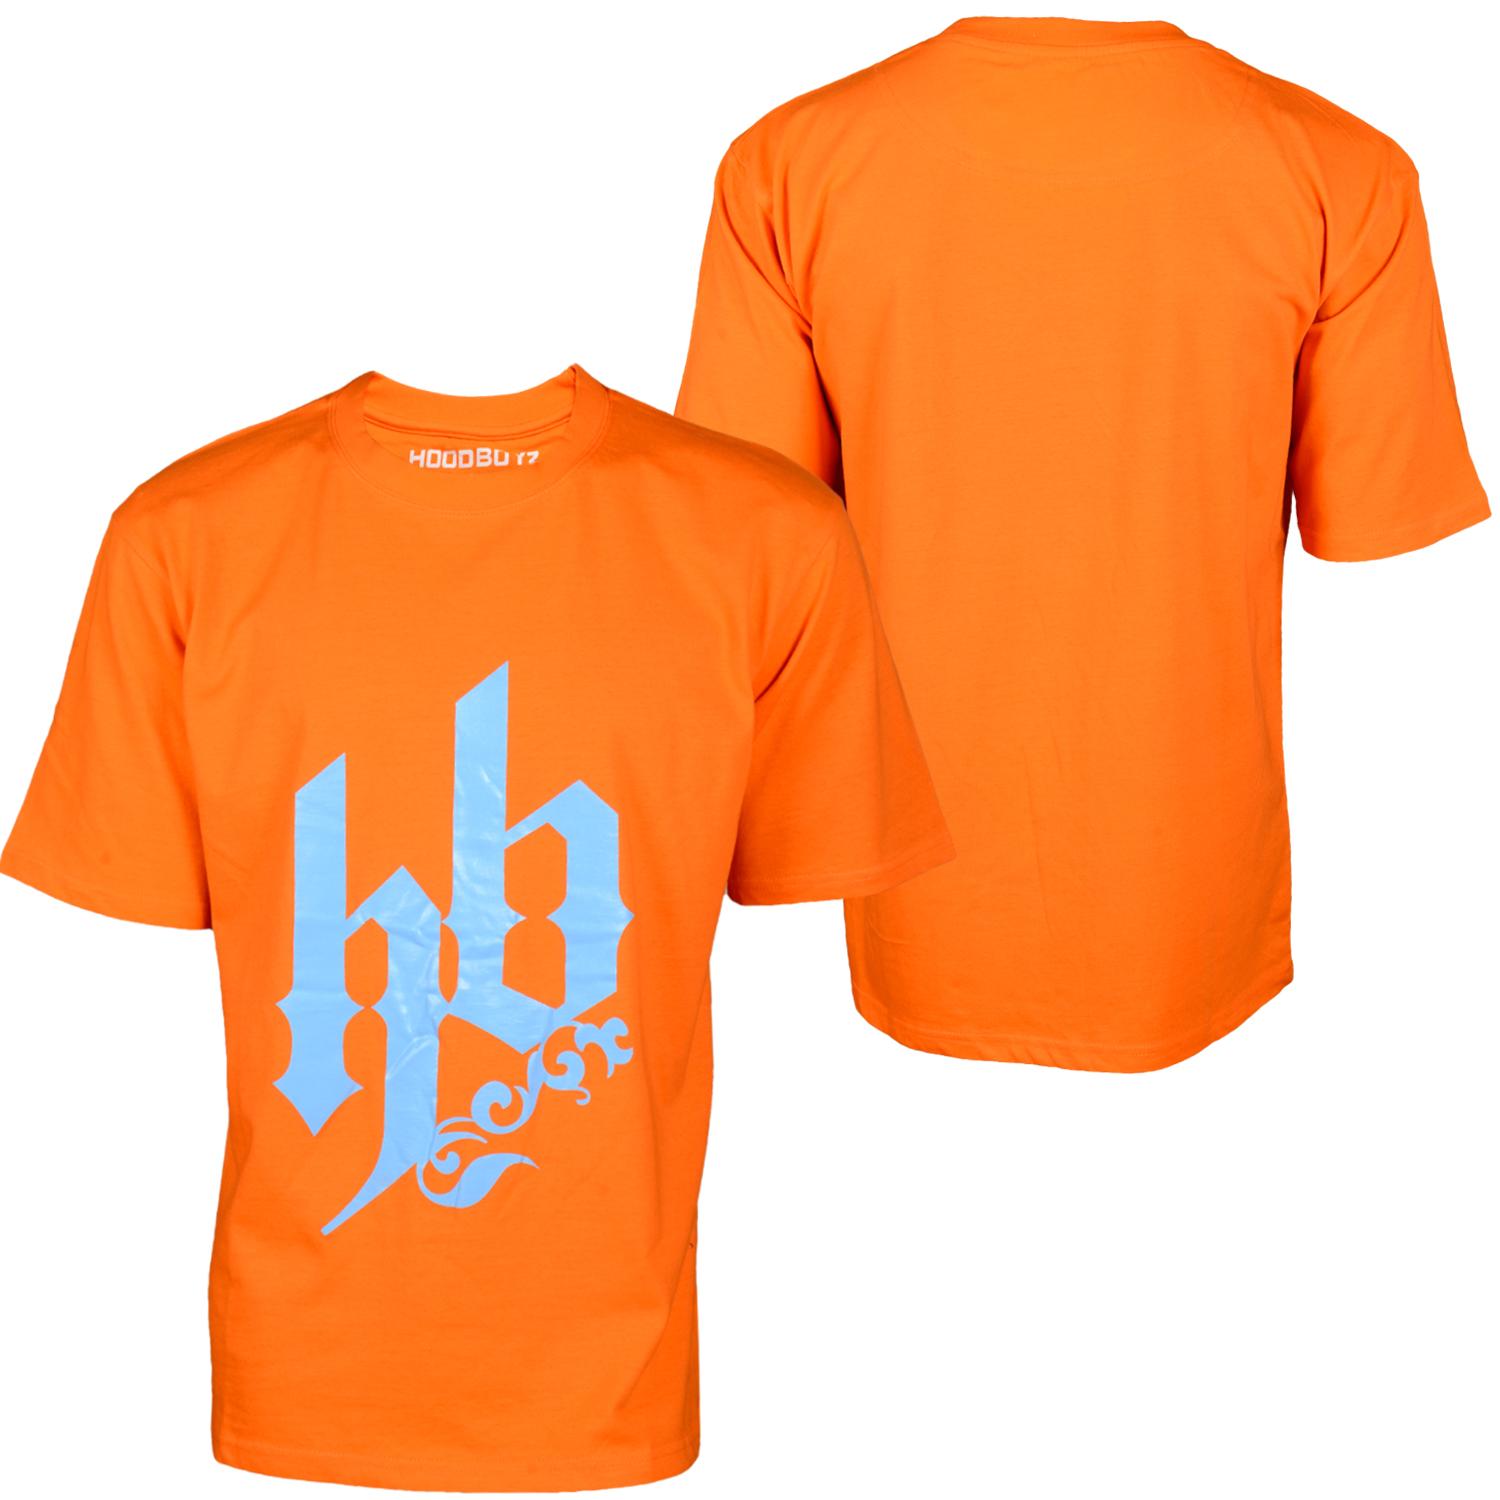 Foto Hoodboyz Front Hb Logo Camisetas Naranja foto 174544